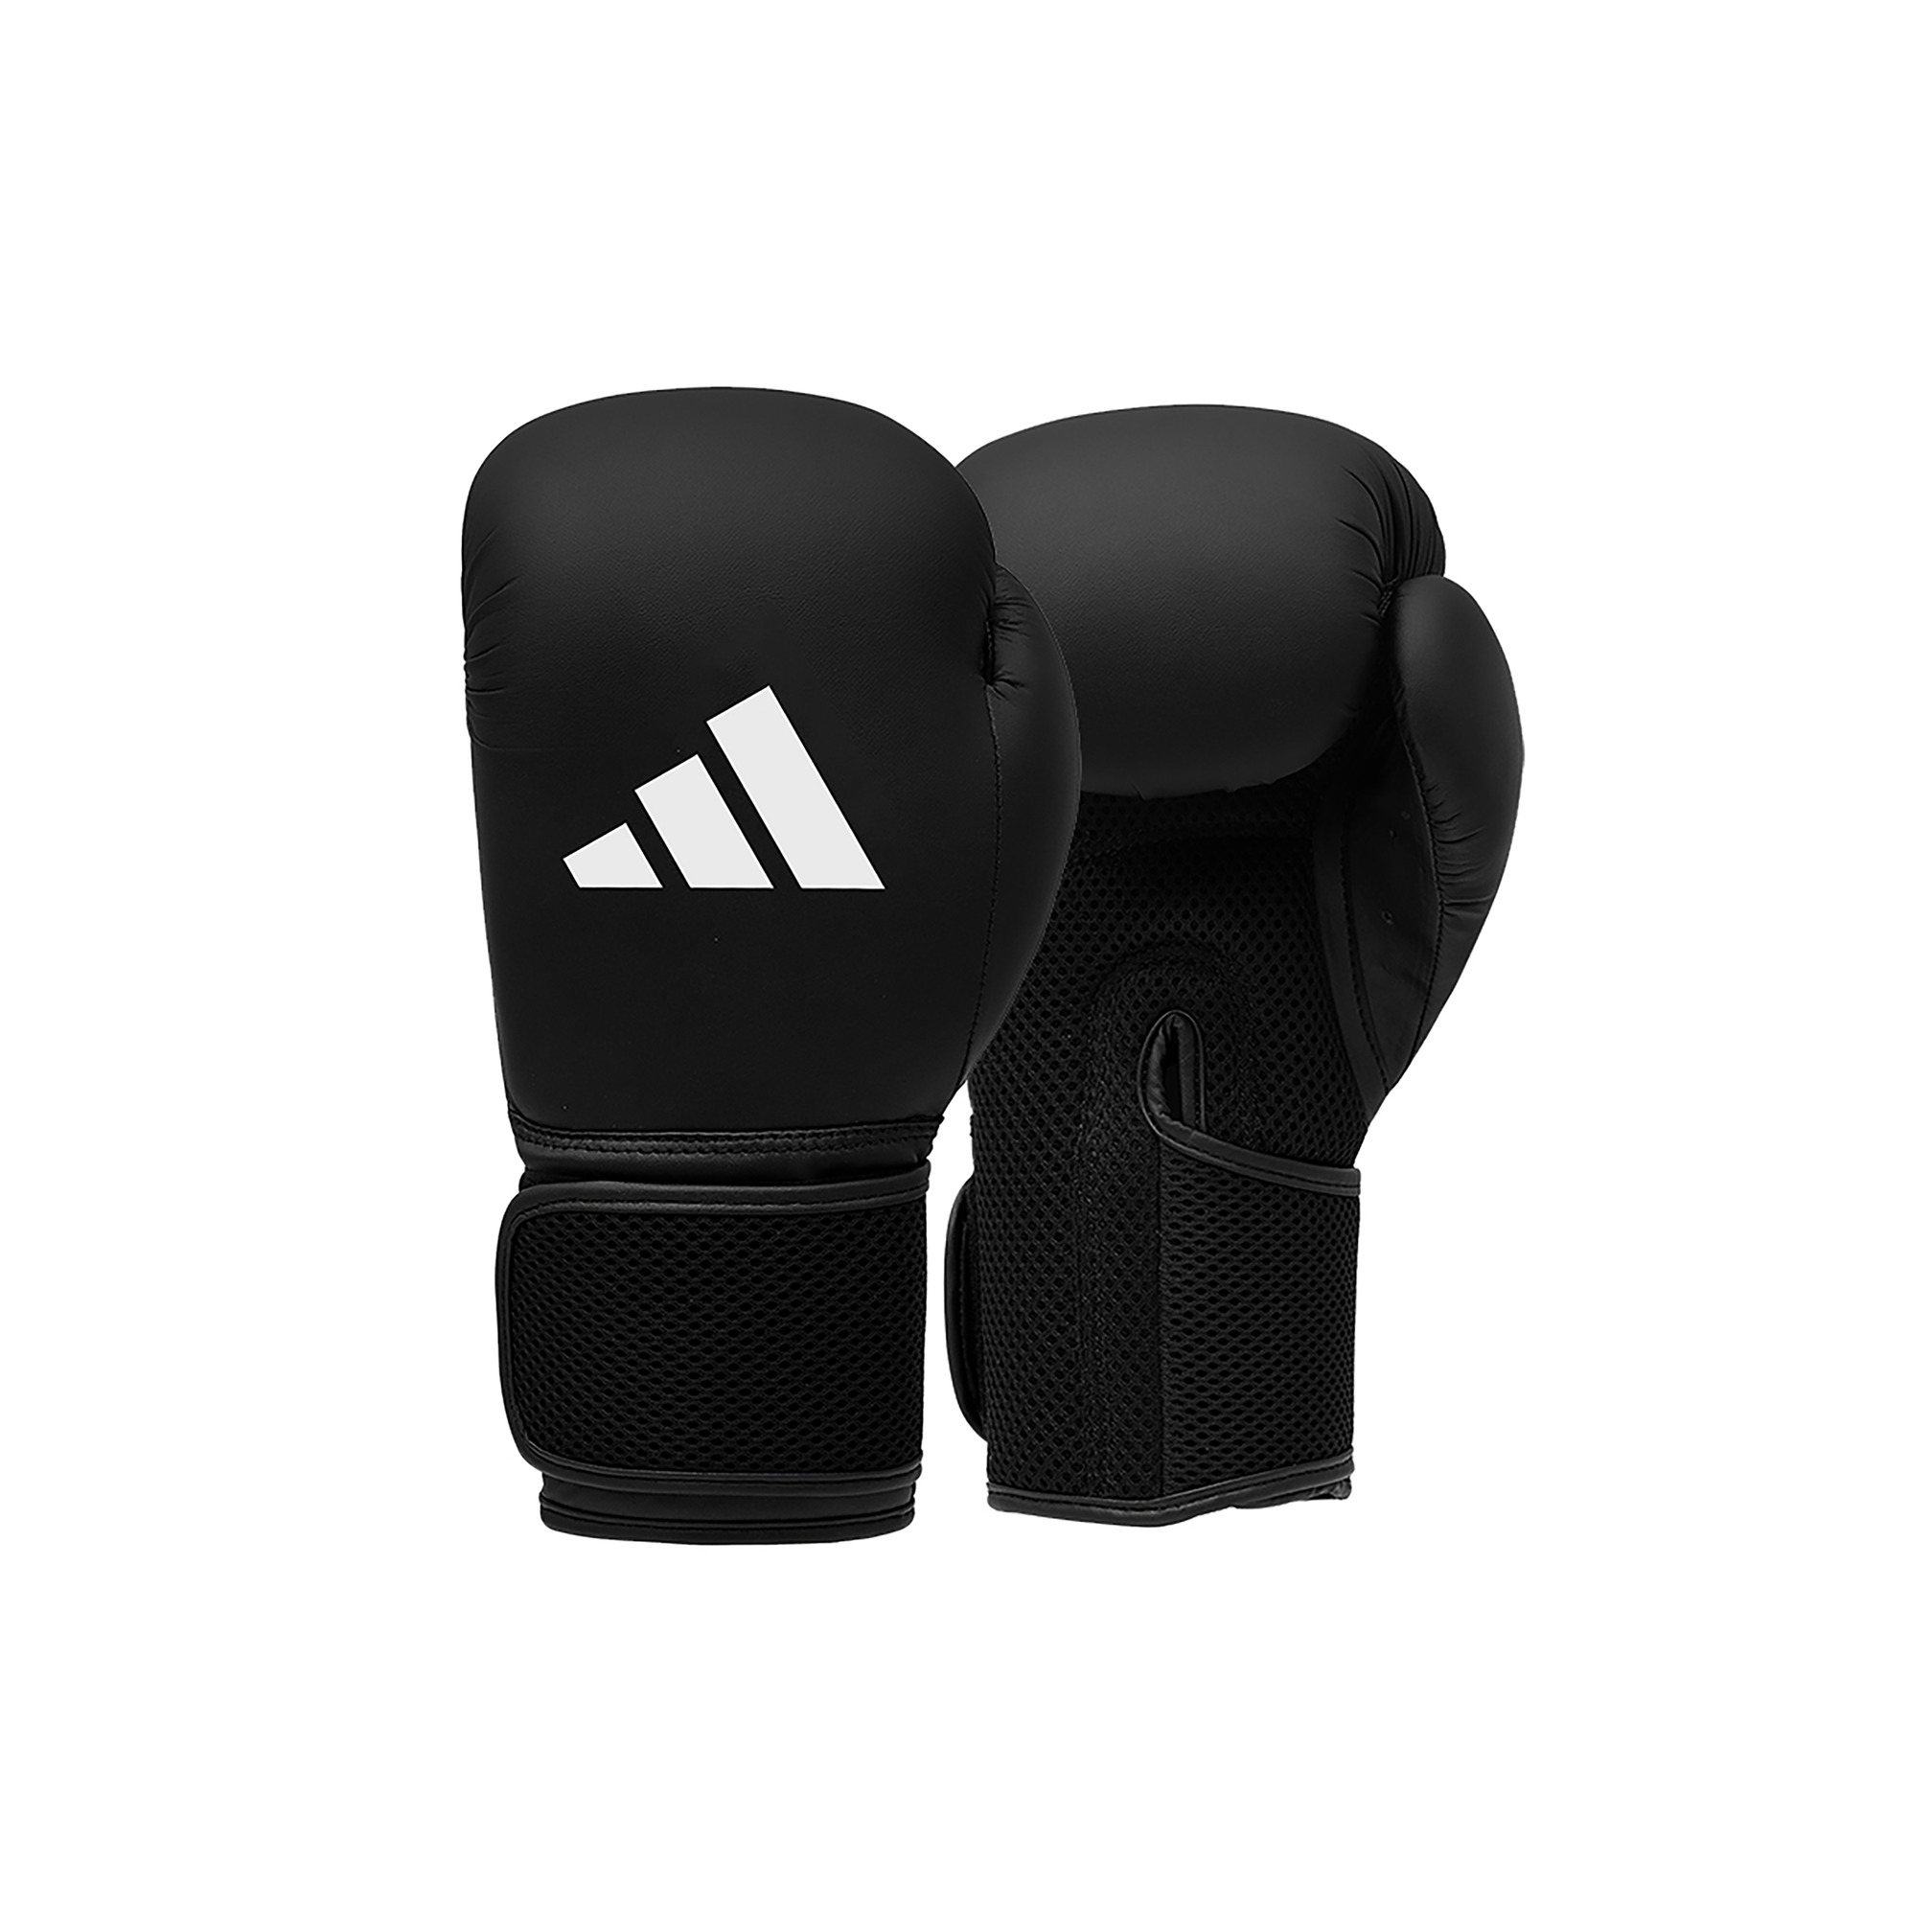 Adidas boxing gloves kids